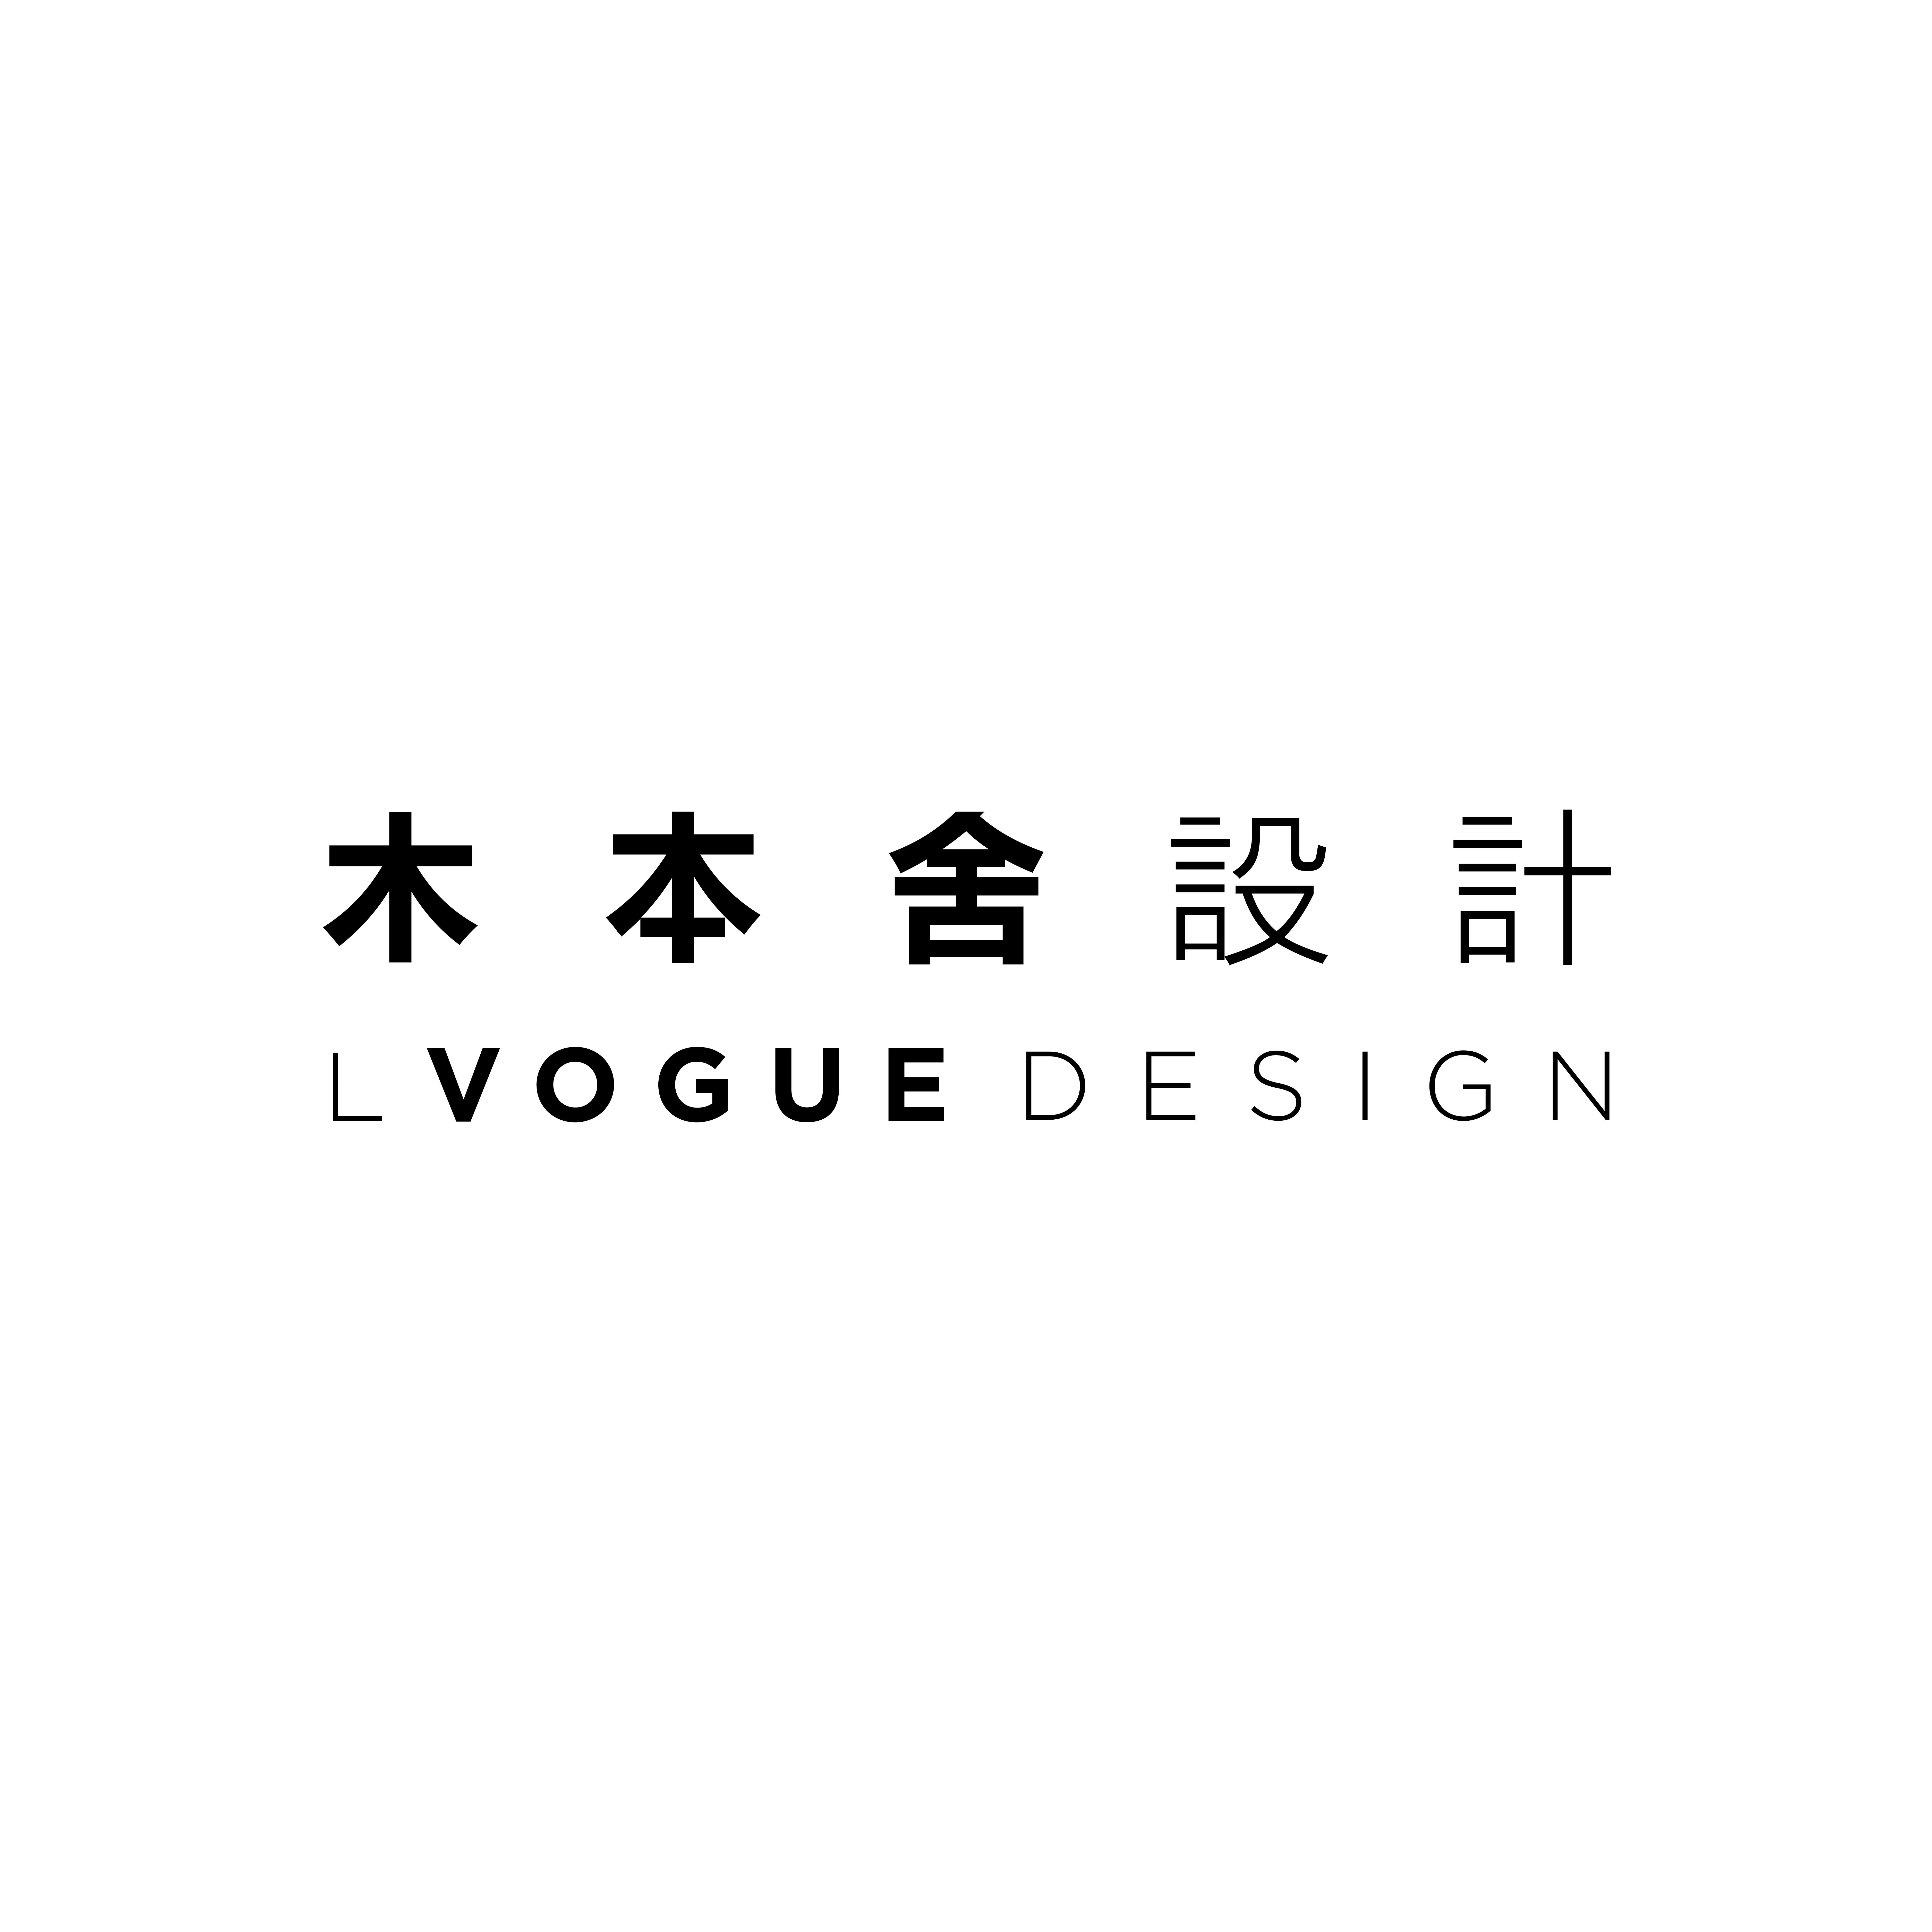 L Vogue Design Ltd